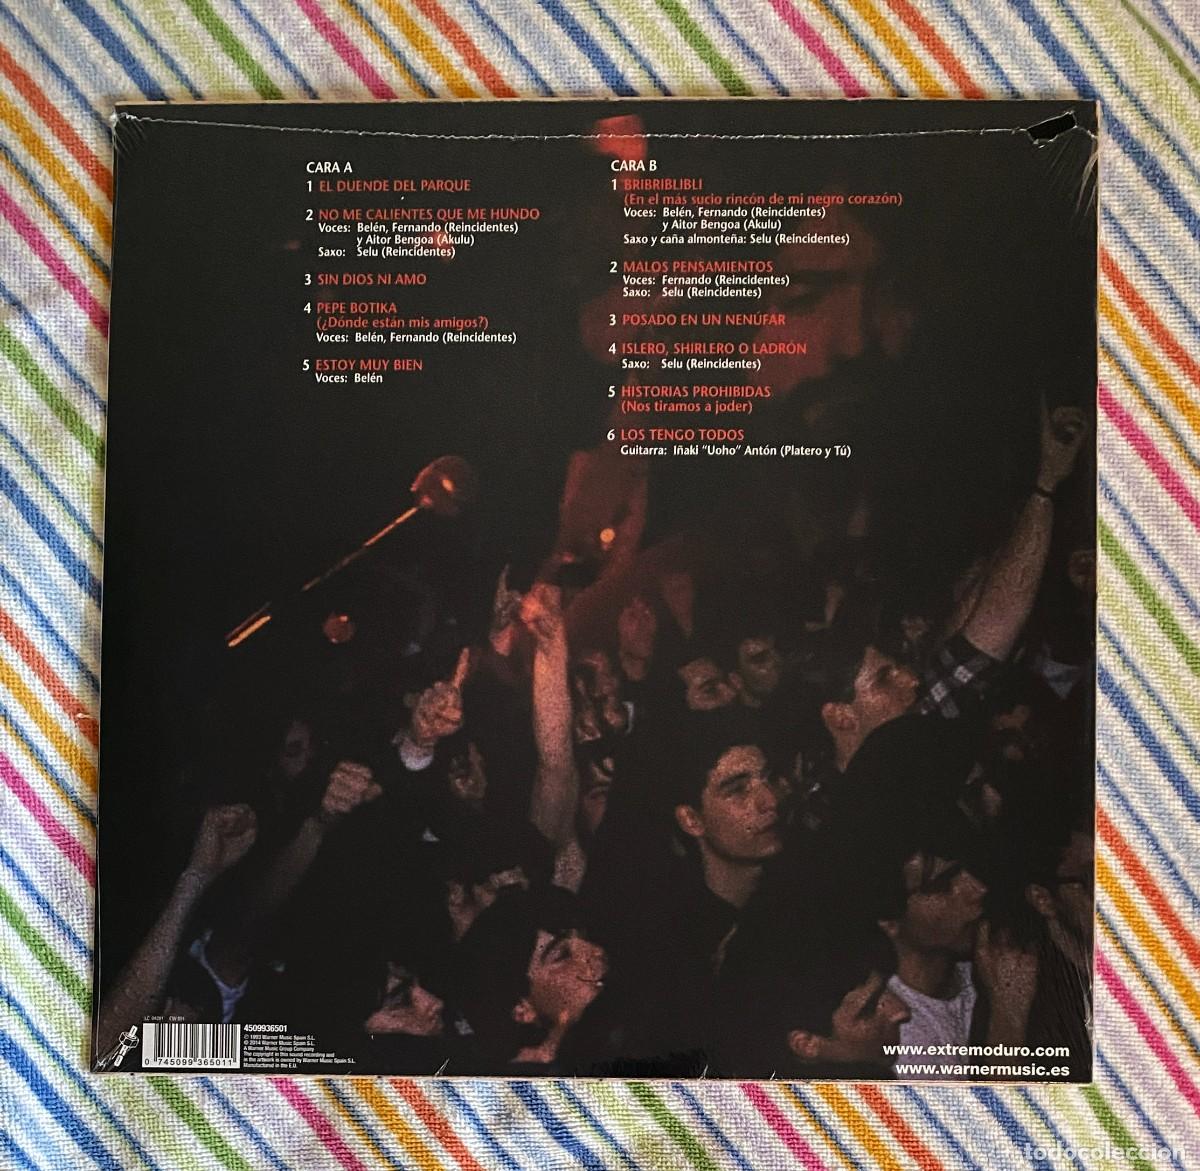 Extremoduro - LP Vinilo + CD Donde Están Mis Amigos